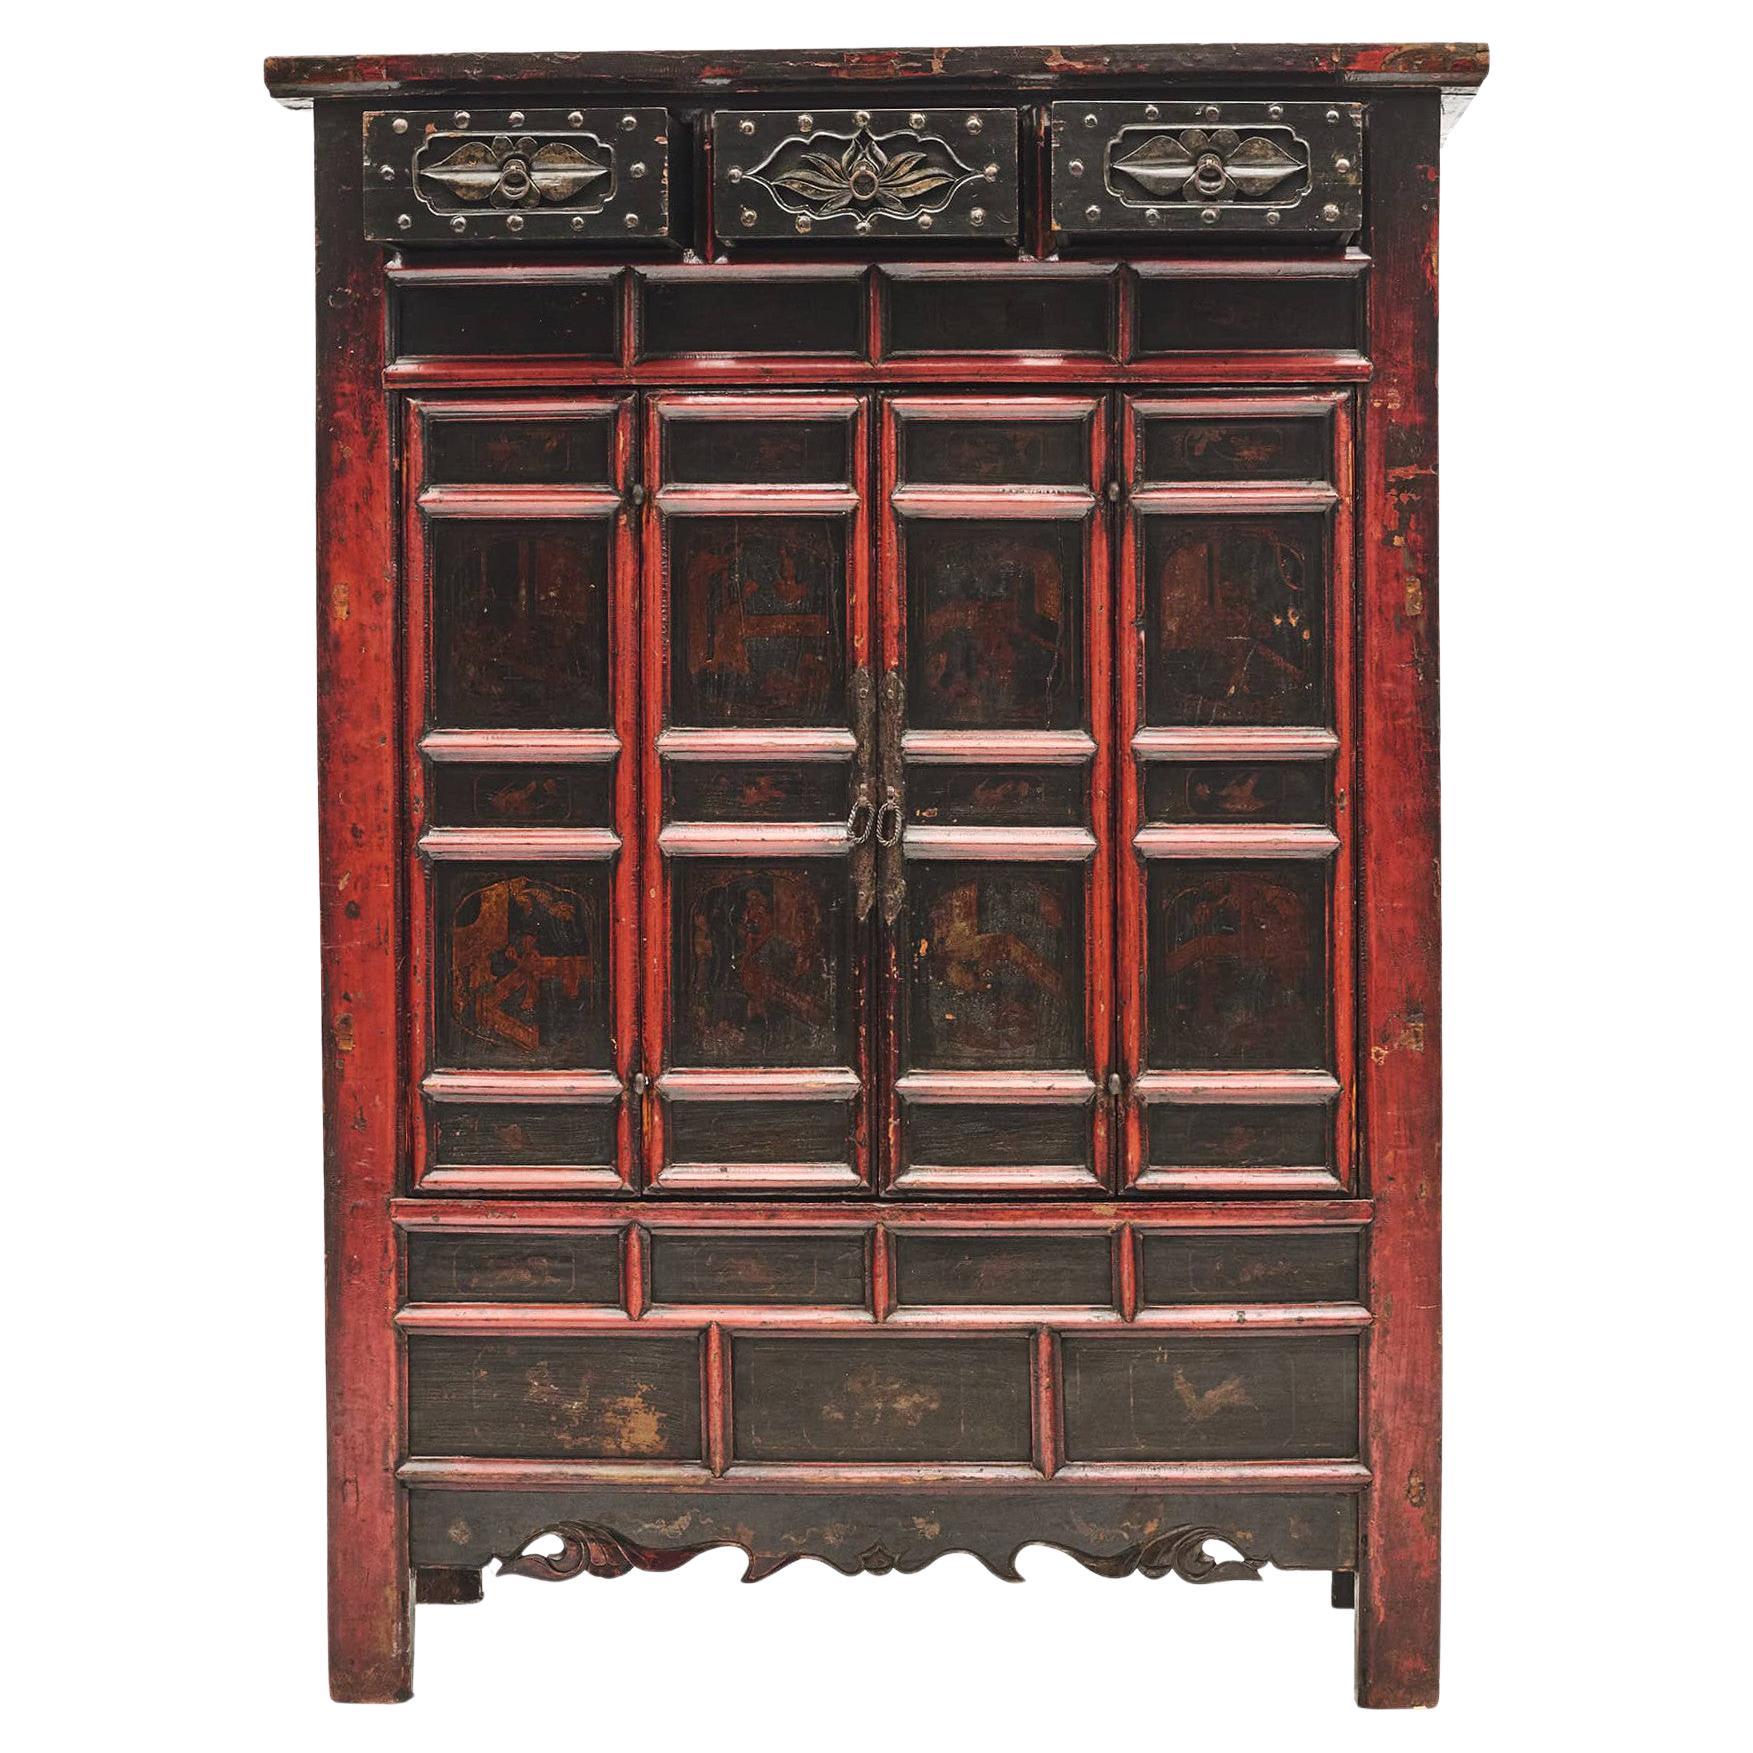 Meuble de rangement décoré de la fin du XVIIIe siècle provenant de Shanxi, Chine